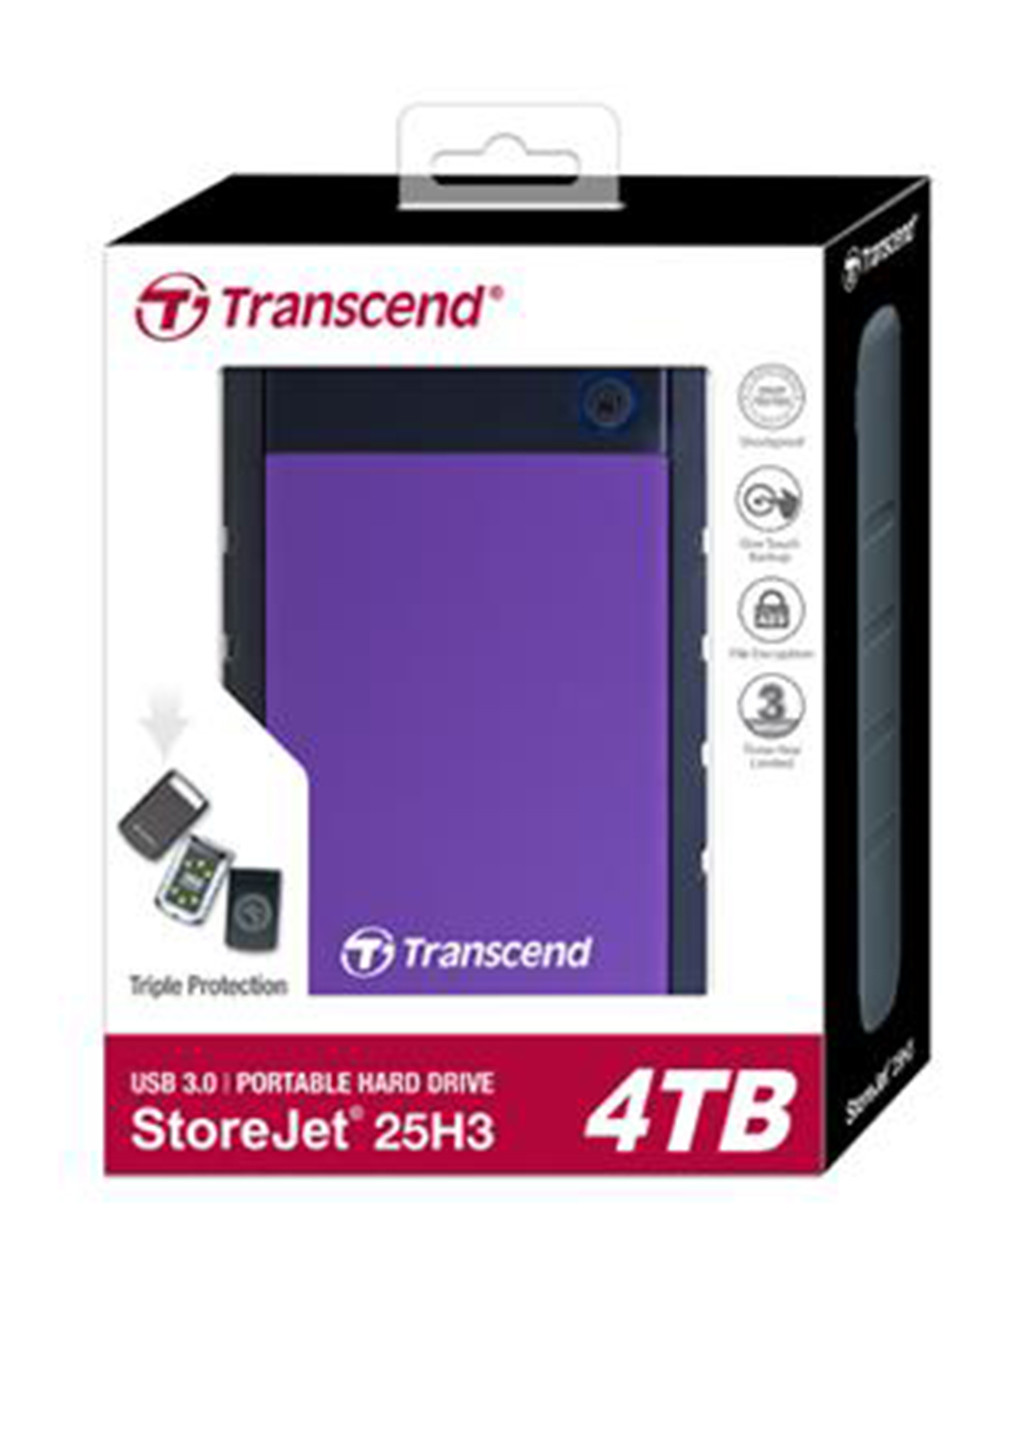 Зовнішній жорсткий диск StoreJet 25H3P 4TB 5400rpm 8MB TS4TSJ25H3P 2.5 USB 3.0 External Purple Transcend Внешний жесткий диск Transcend StoreJet 25H3P 4TB 5400rpm 8MB TS4TSJ25H3P 2.5 USB 3.0 External Purple фіолетовий